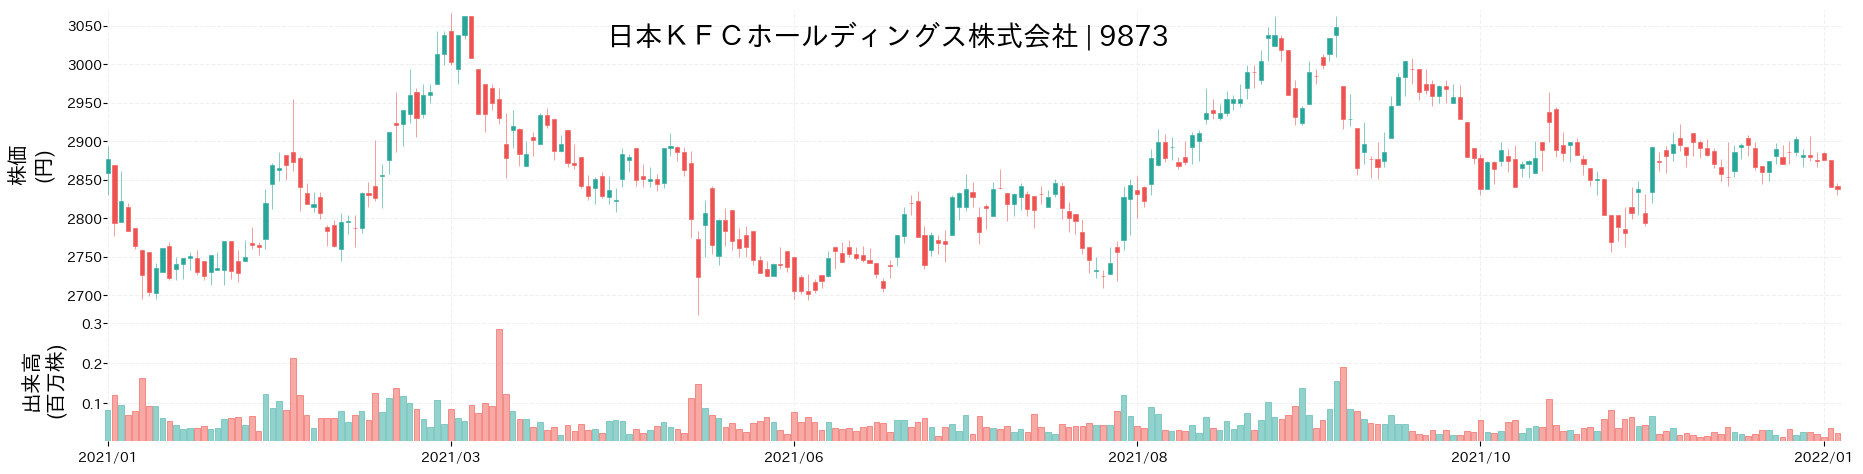 日本KFCホールディングスの株価推移(2021)